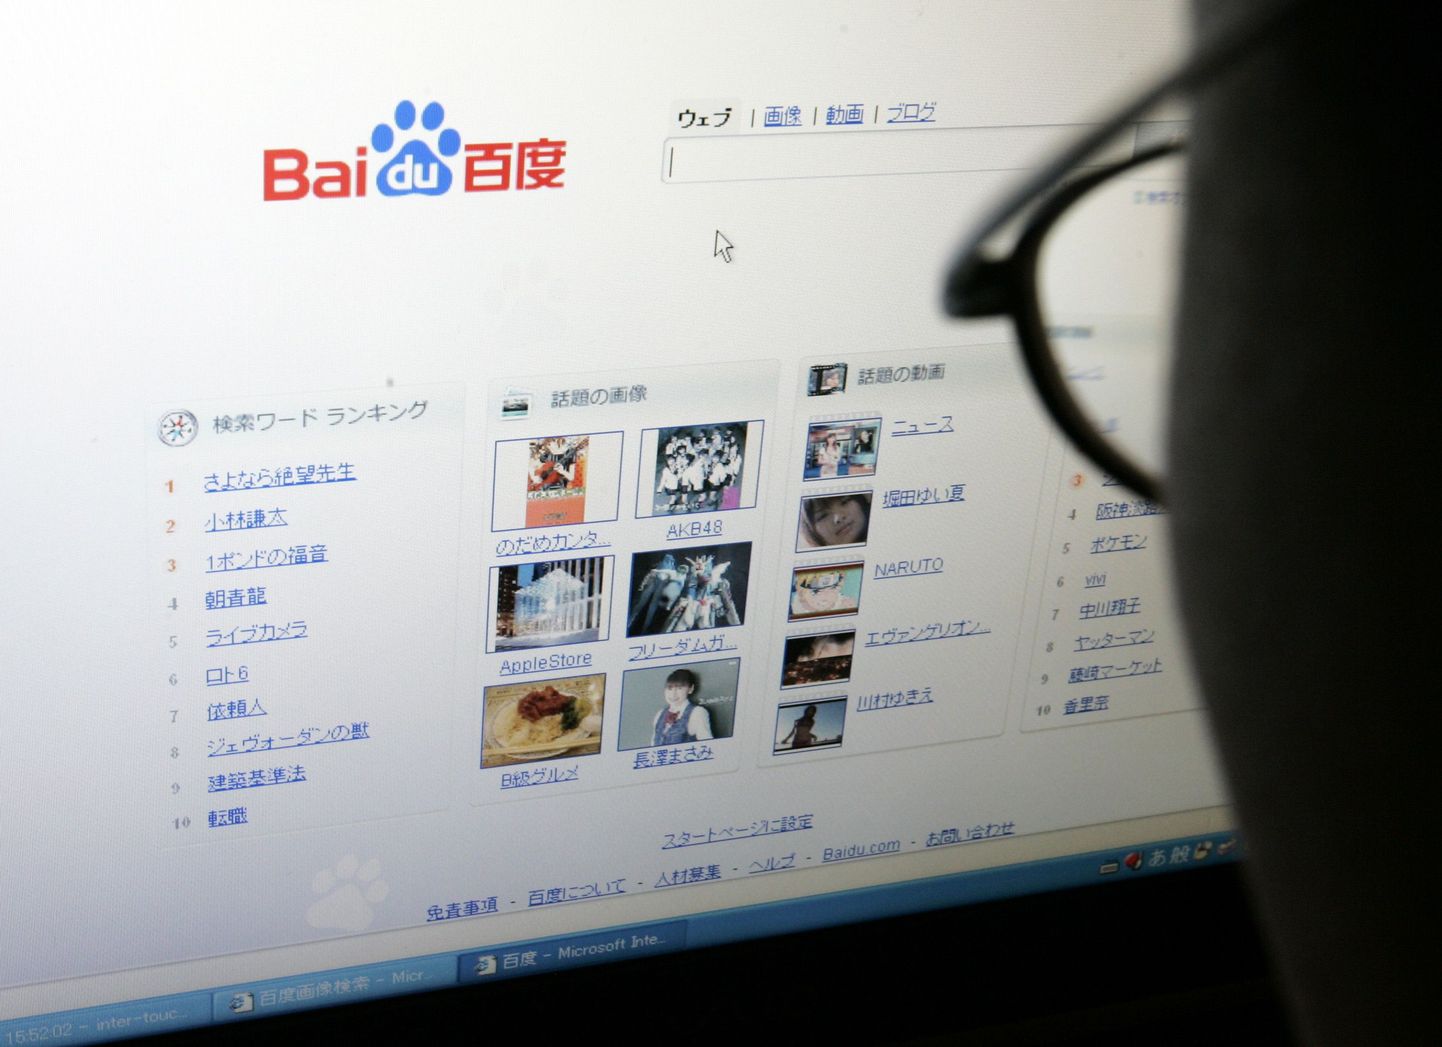 Hiina populaarsema otsingumootori Baidu avaleht.